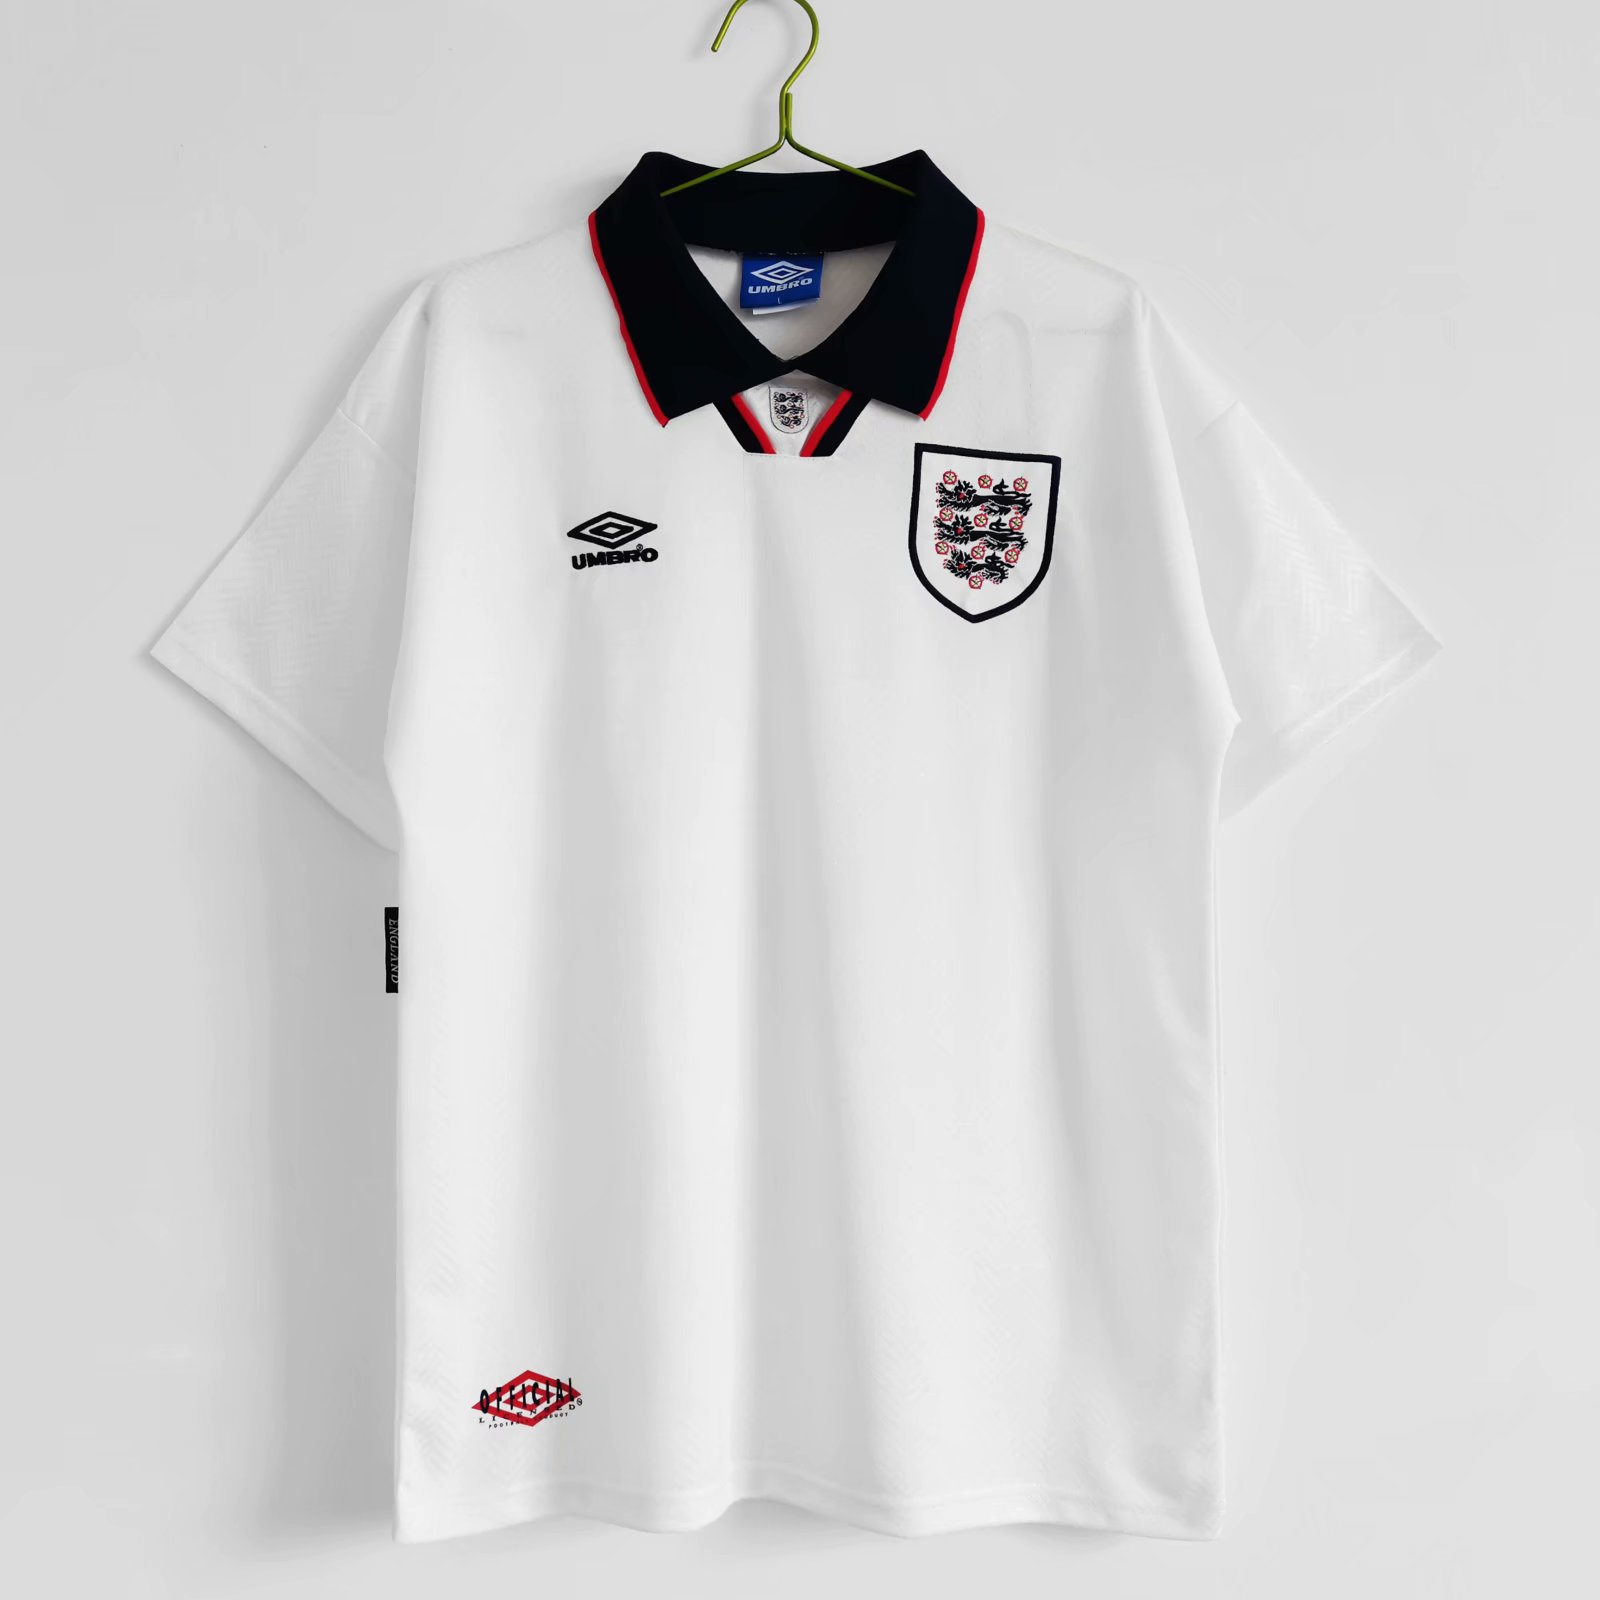 1994-1995 England home  Retro